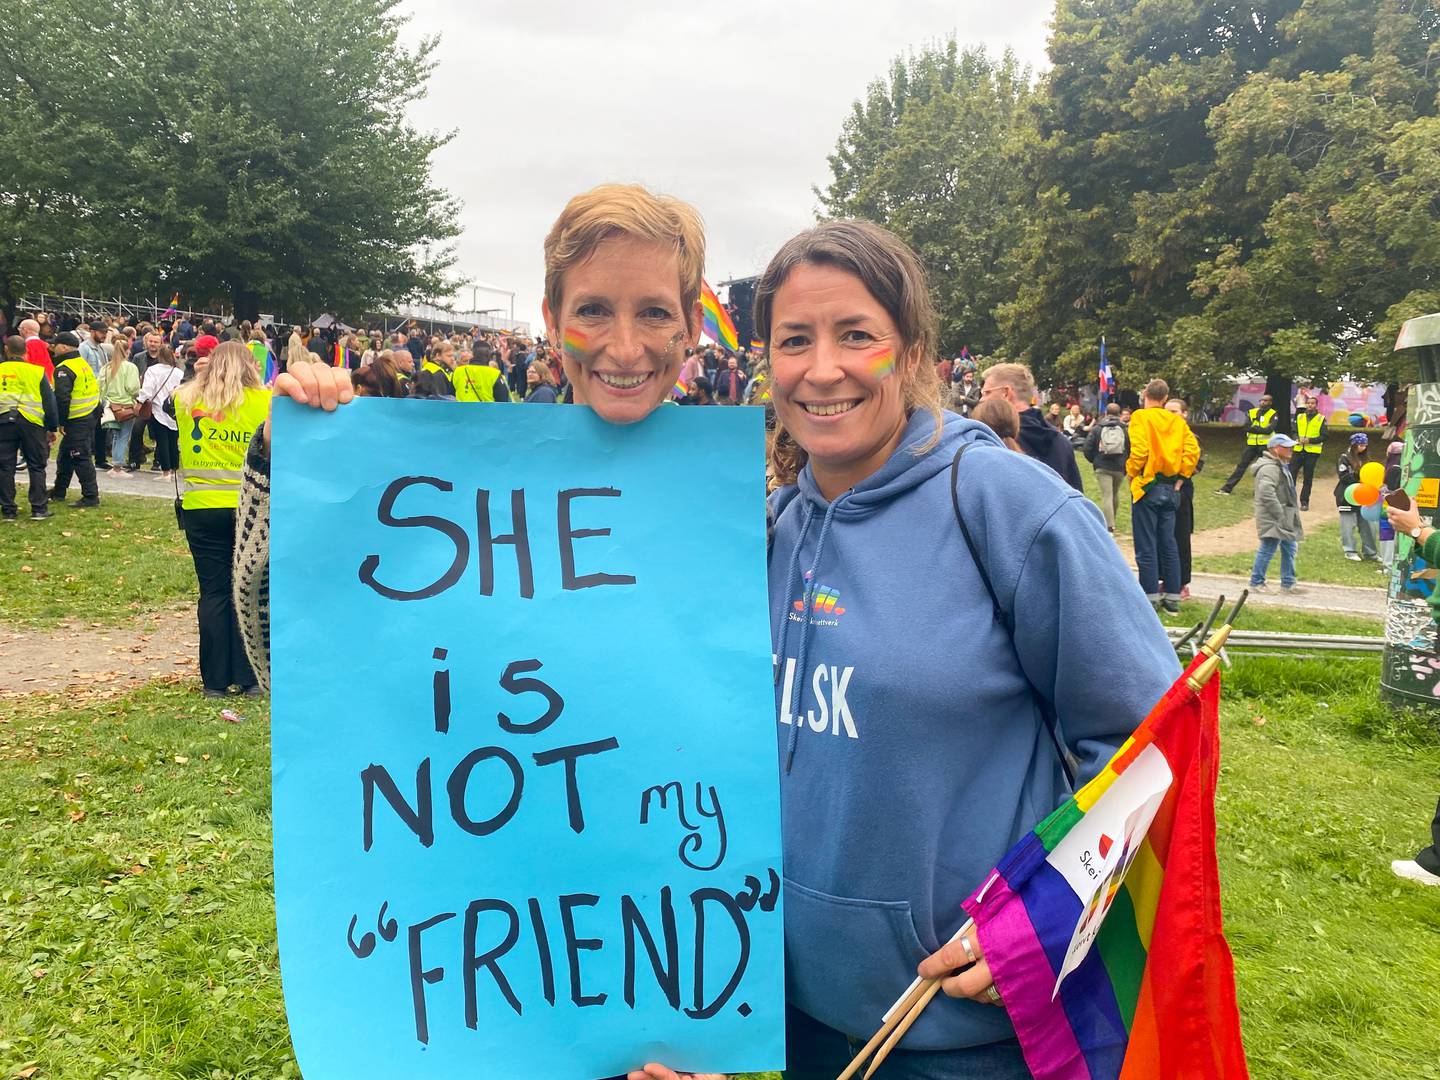 KJÆRESTER: Marit Liarbø (t.h.) gikk sammen med kjæresten Kate Showalter i regnbuetoget lørdag. Plakat med teksten "She is not my "friend"".